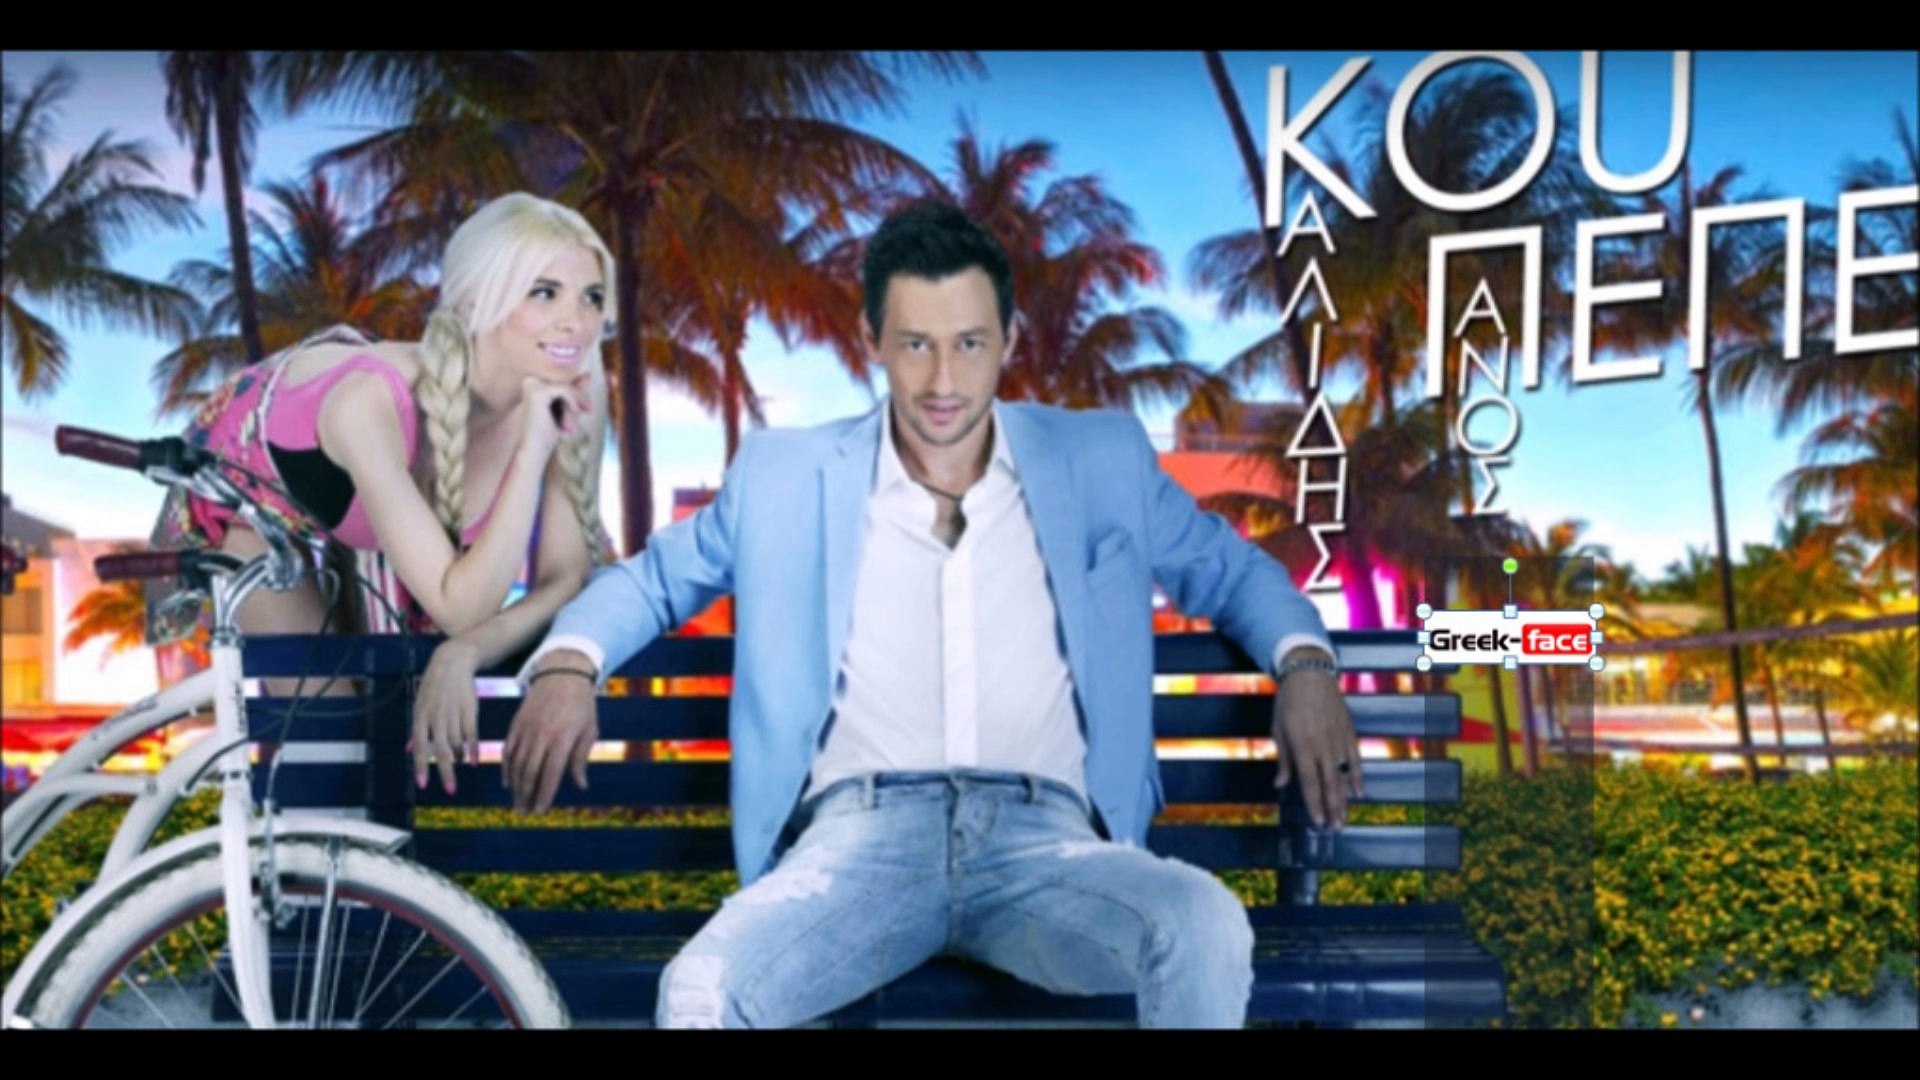 ΠΚ| Πάνος Καλίδης - Κου Πεπε (Valentino Mix)| (Official mp3 hellenicᴴᴰ  music web promotion) Greek- face - video Dailymotion